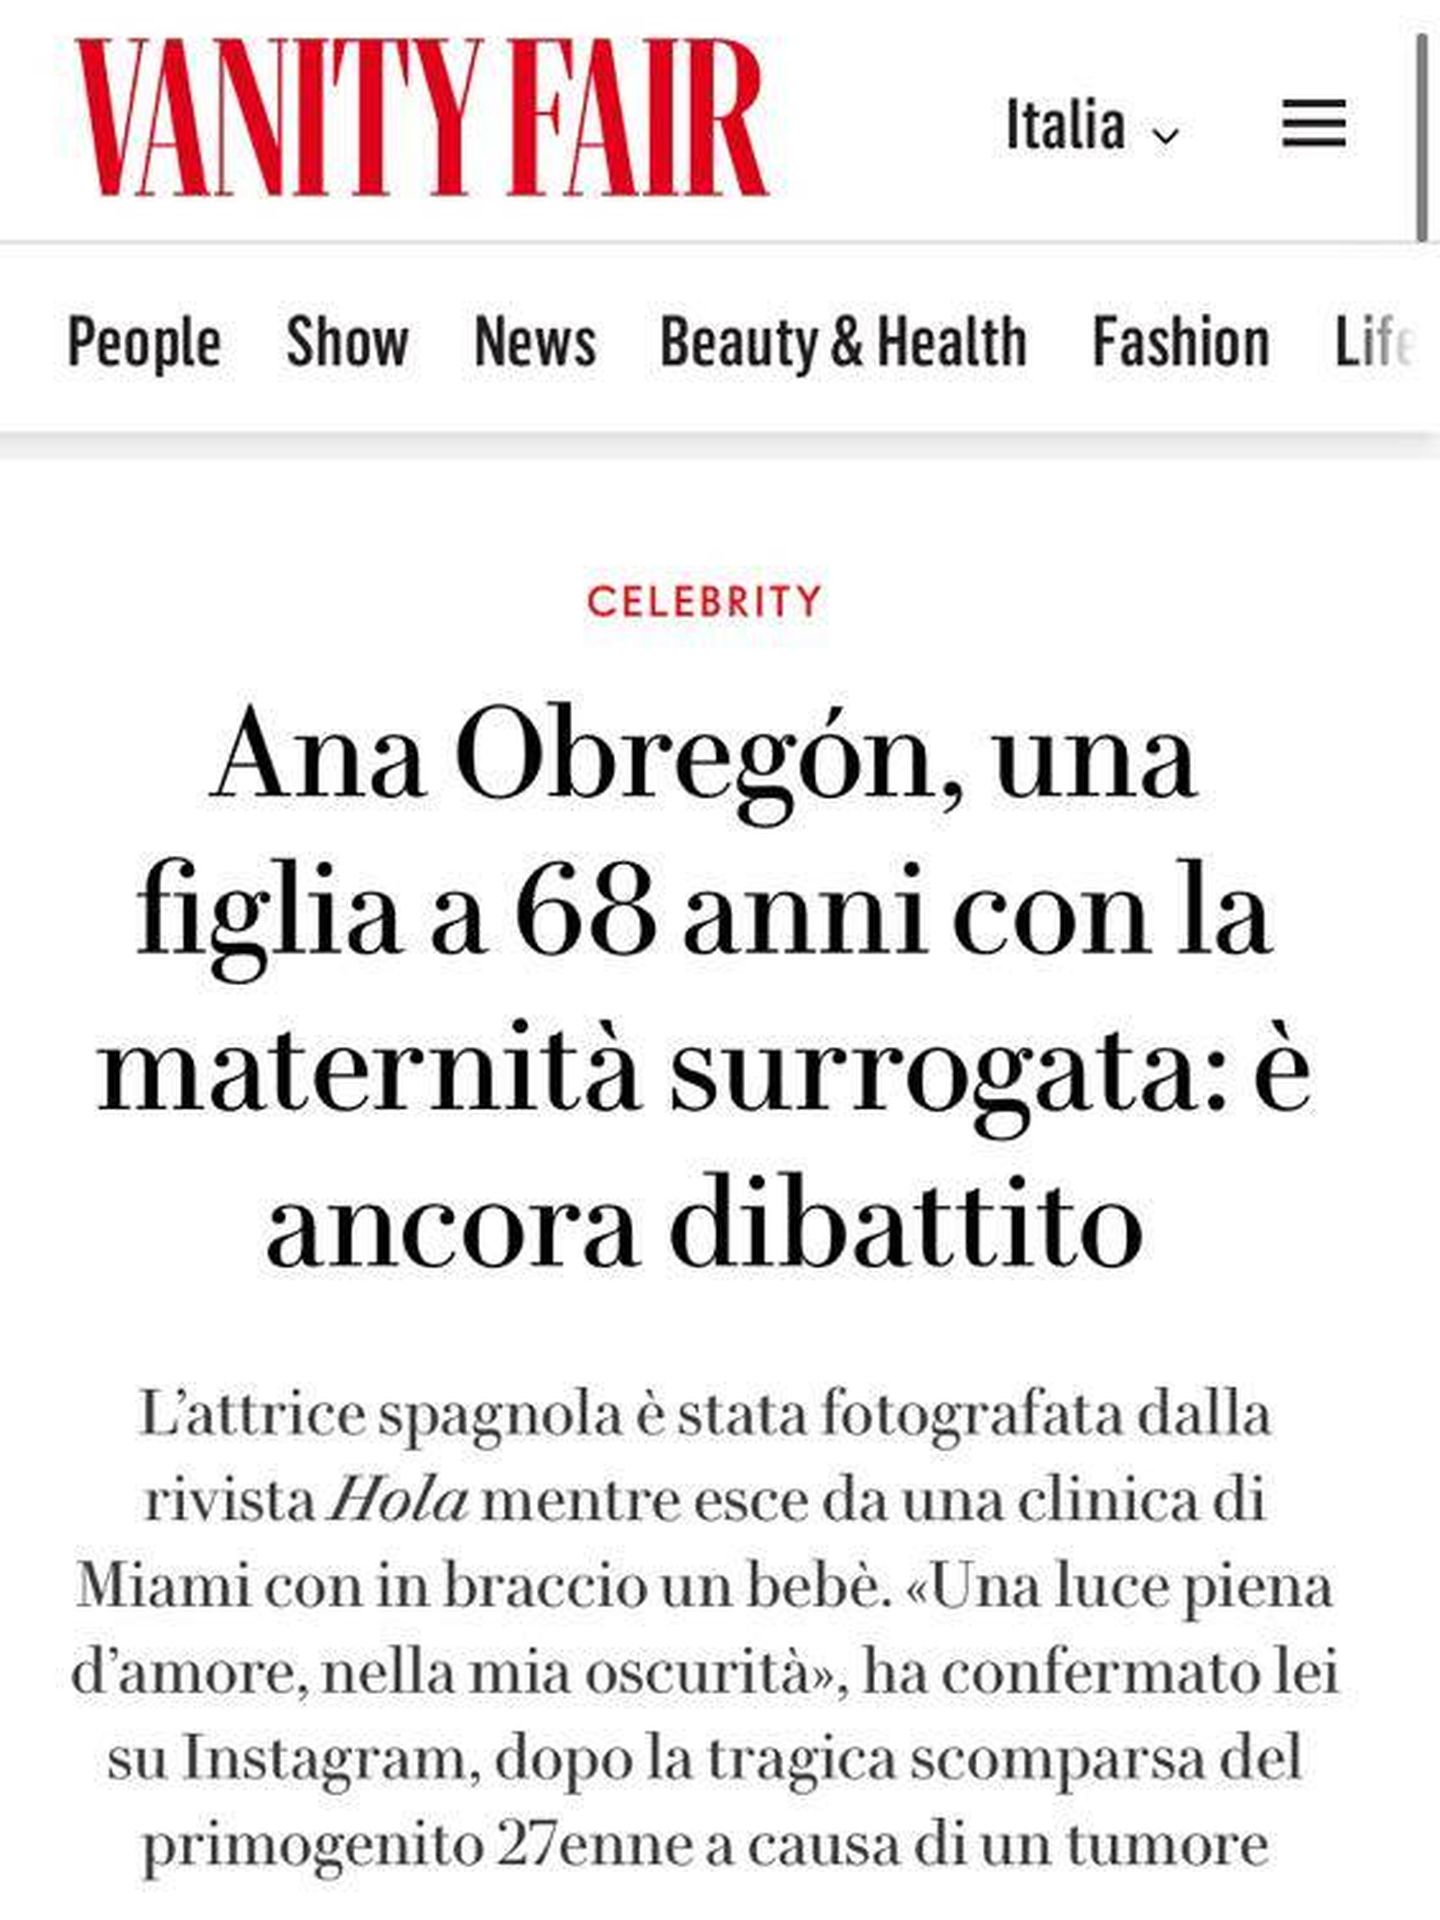 Captura de pantalla de la noticia de la edición italiana de 'Vanity Fair' sobre la maternidad de Ana Obregón.